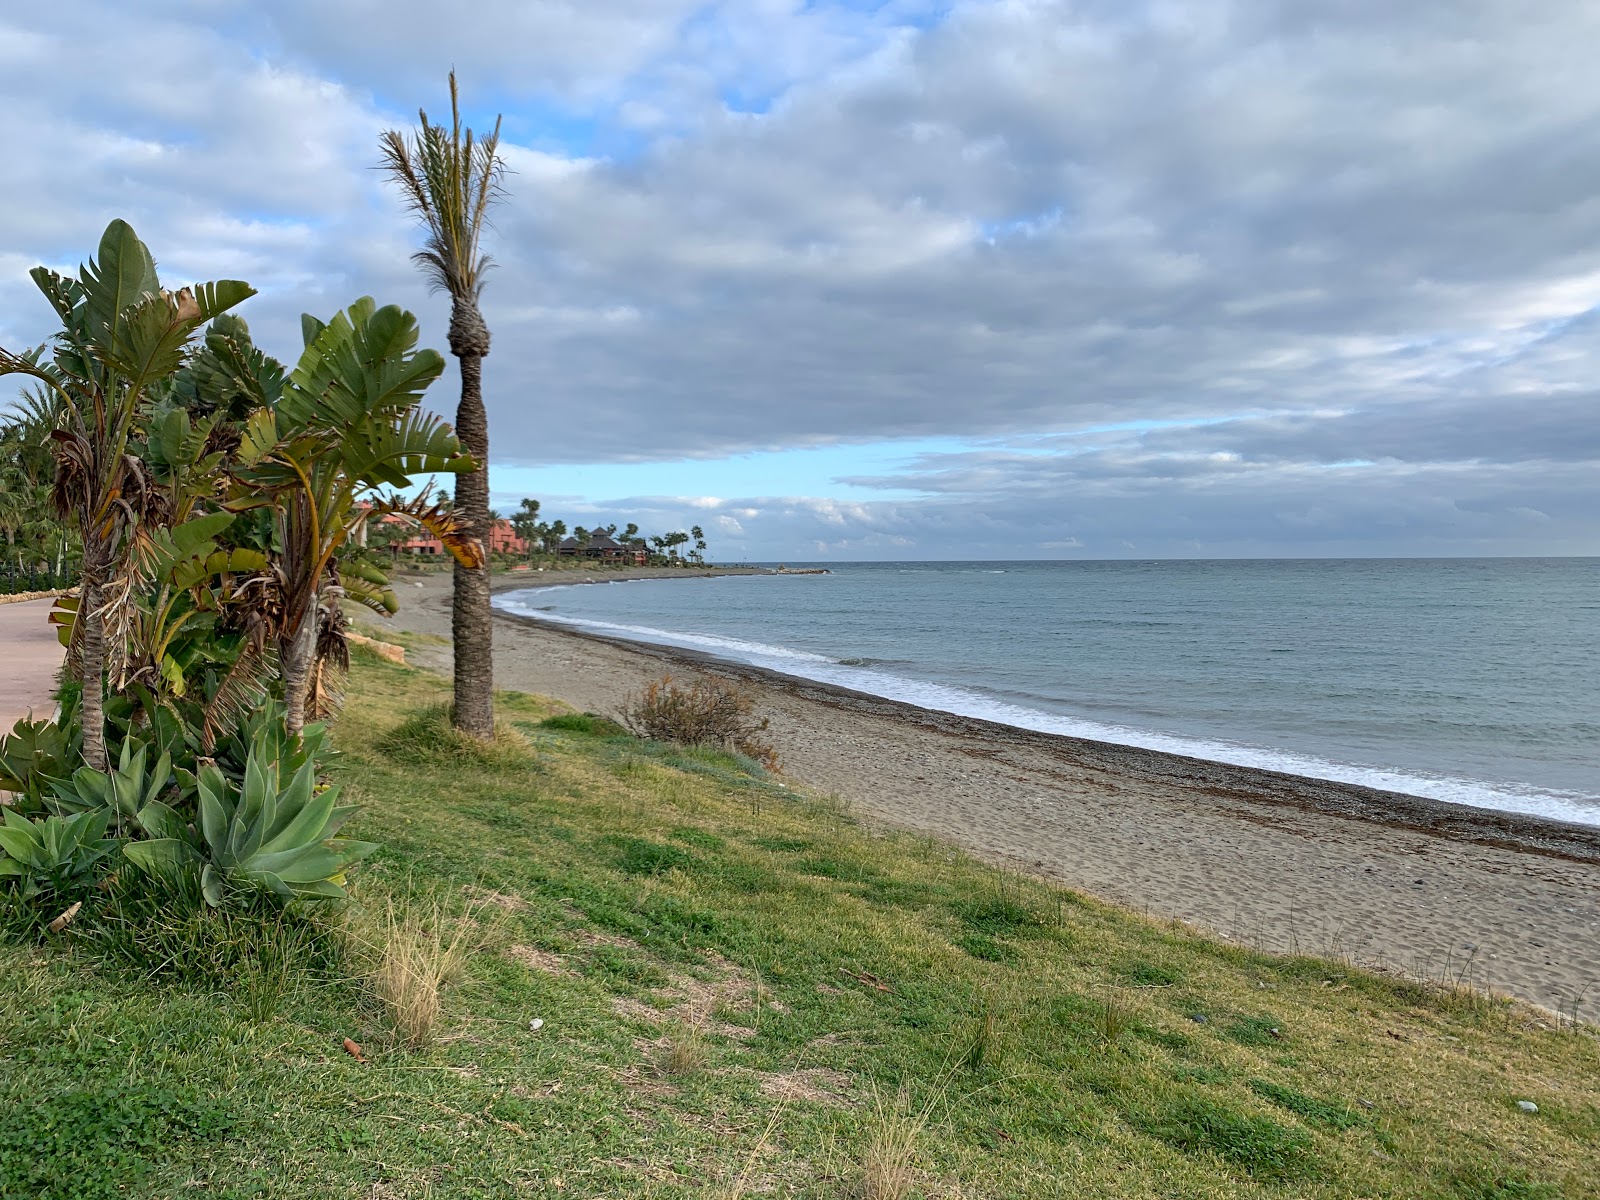 Playa Guadalmansa'in fotoğrafı geniş plaj ile birlikte